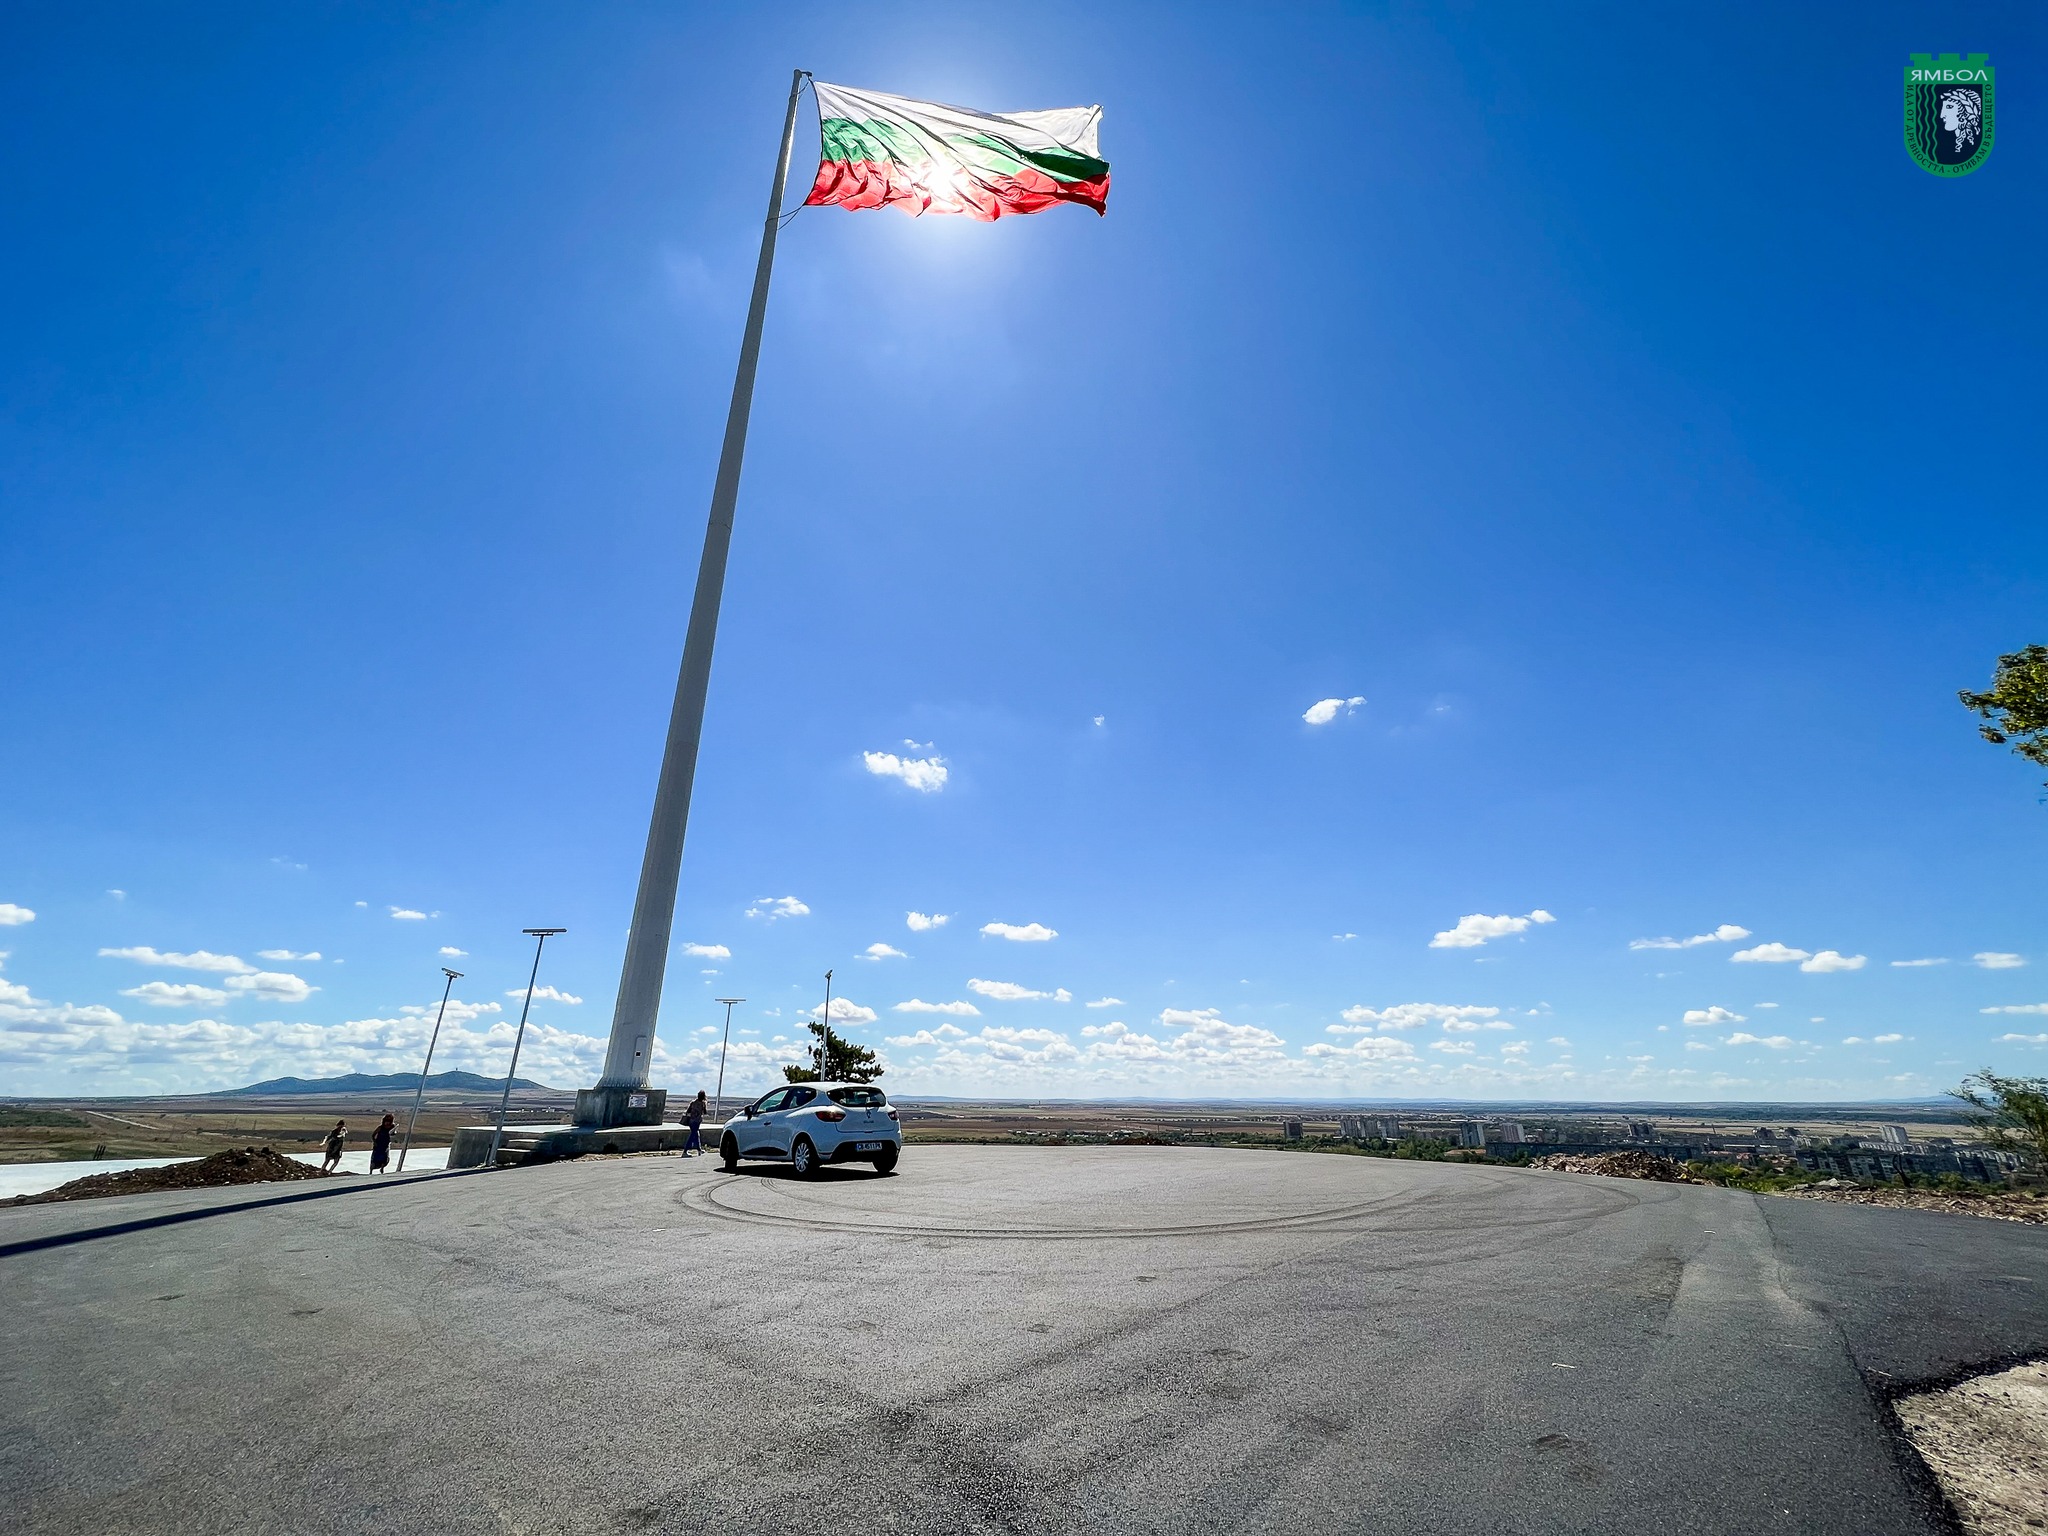 ЯМБОЛ. Продължава облагородяването на пространството около 55-метровия пилон с българско знаме